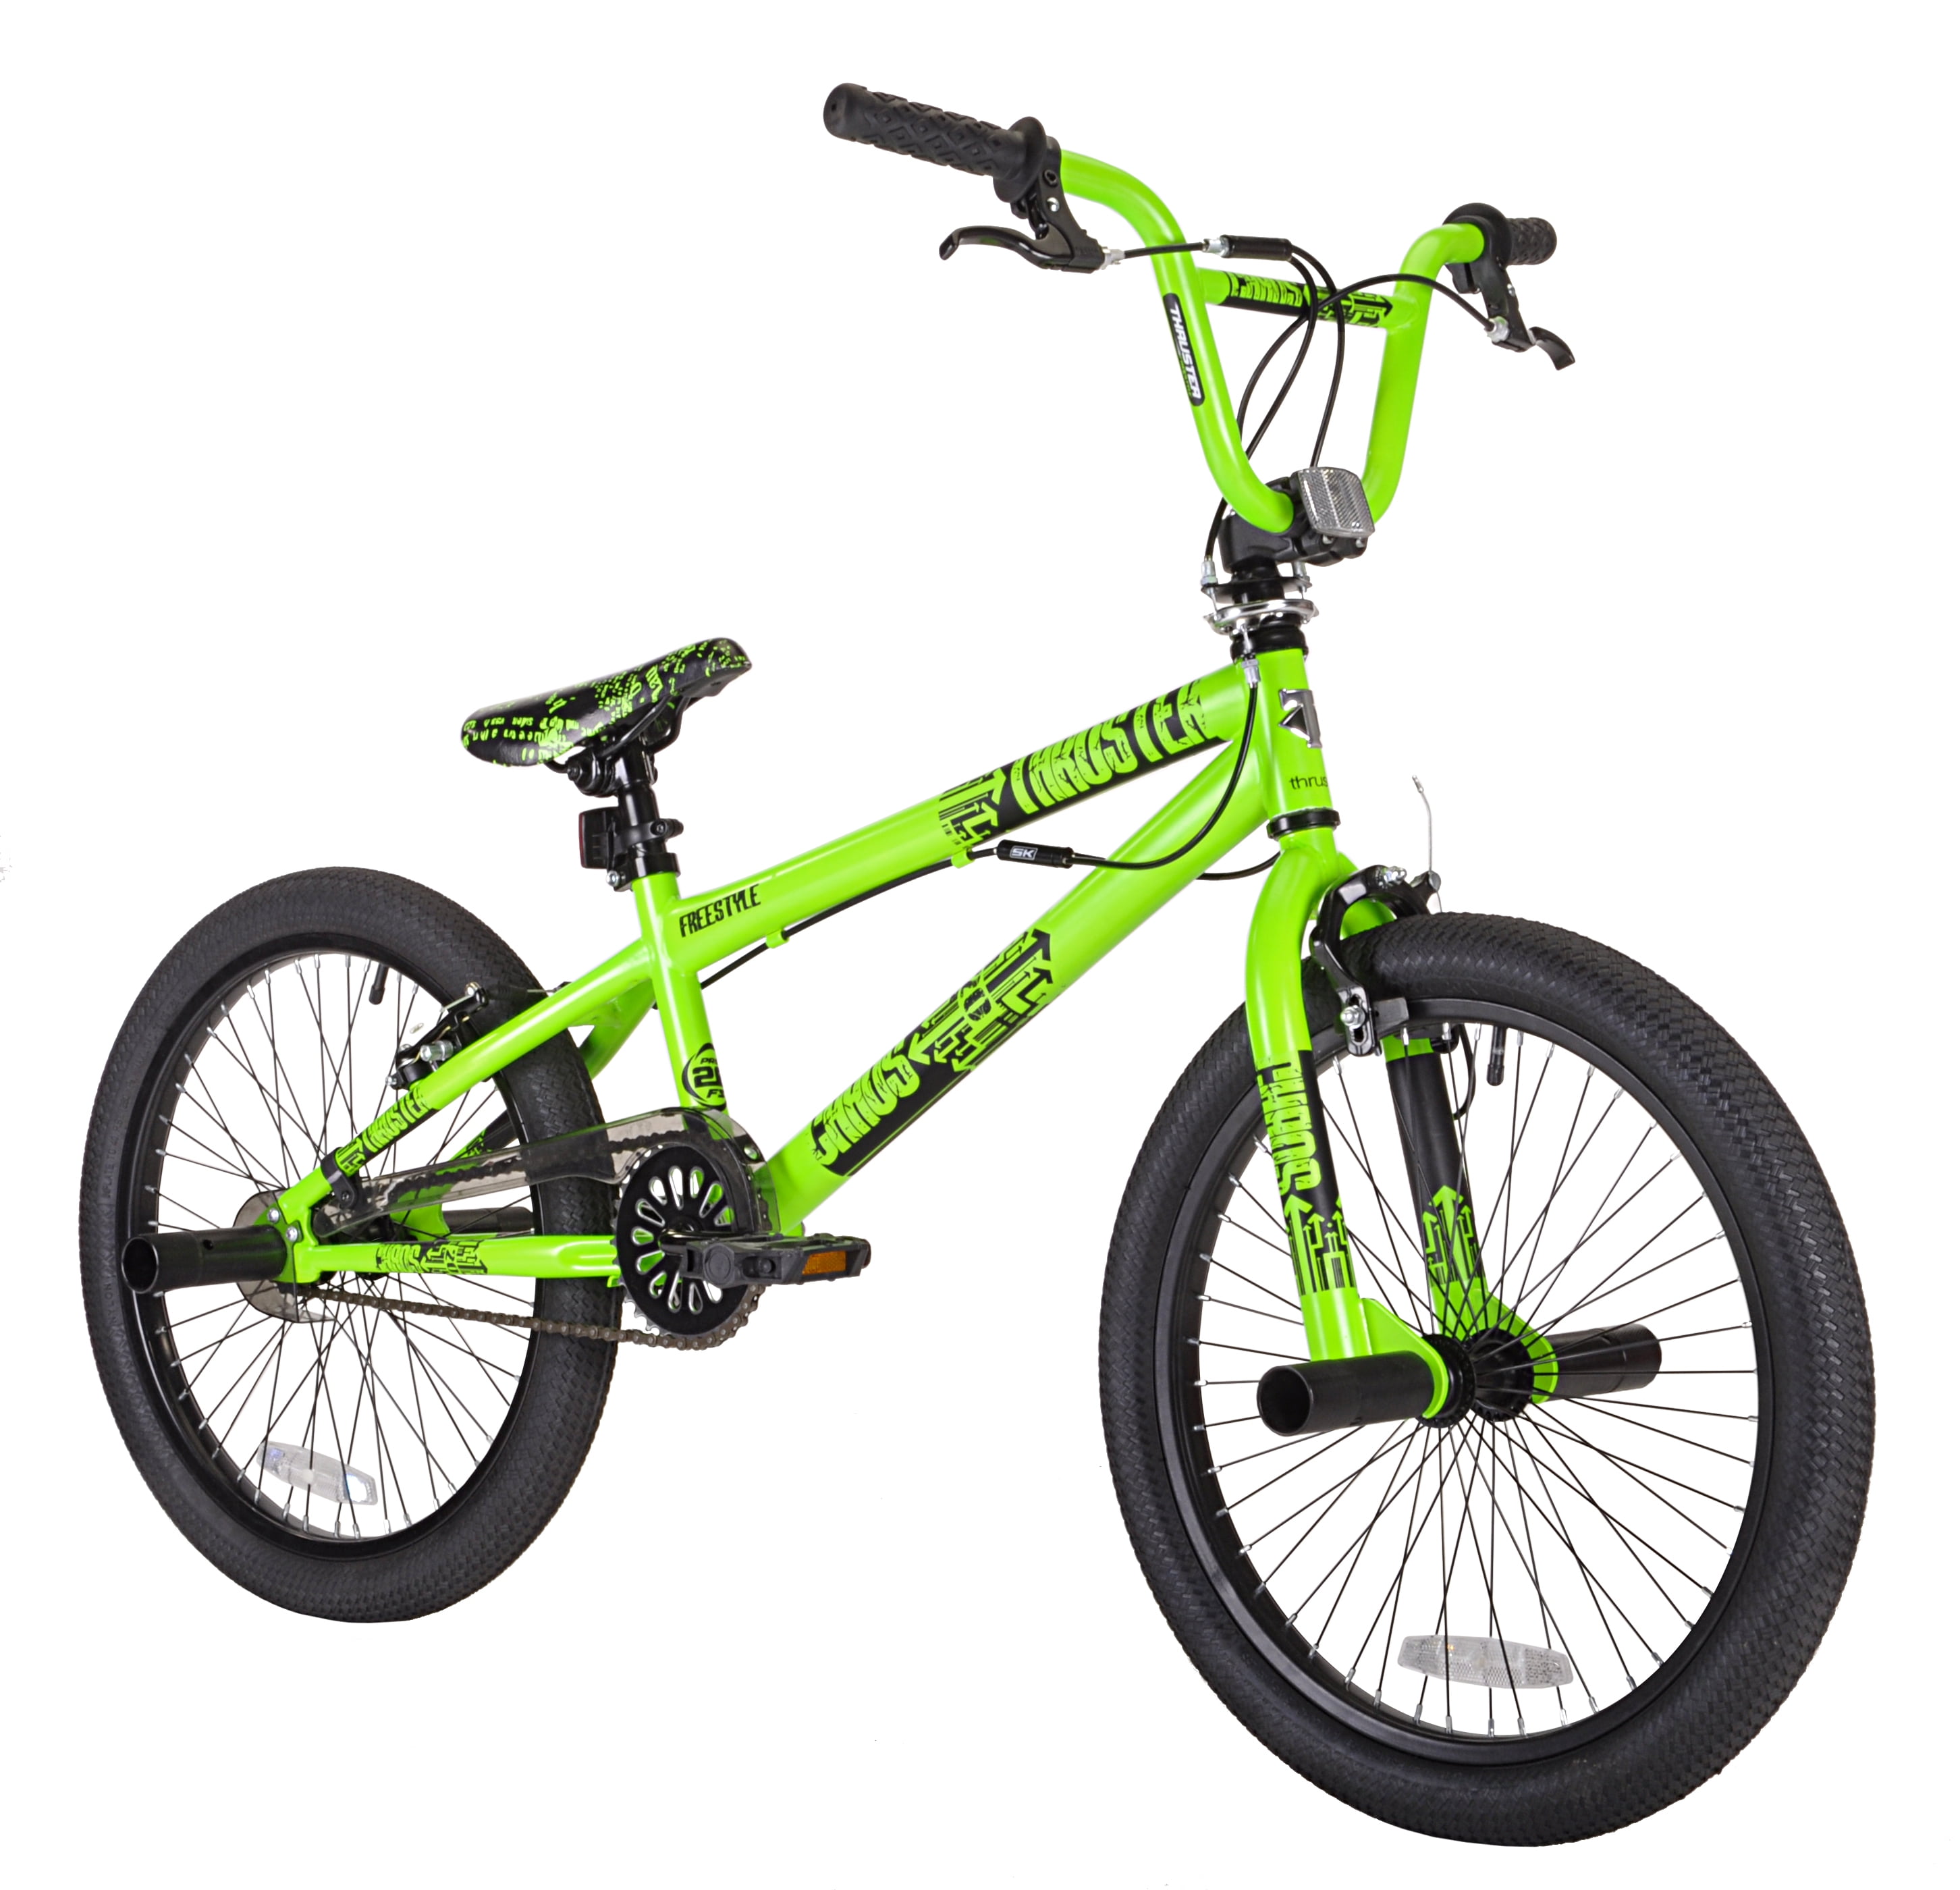 walmart green bike